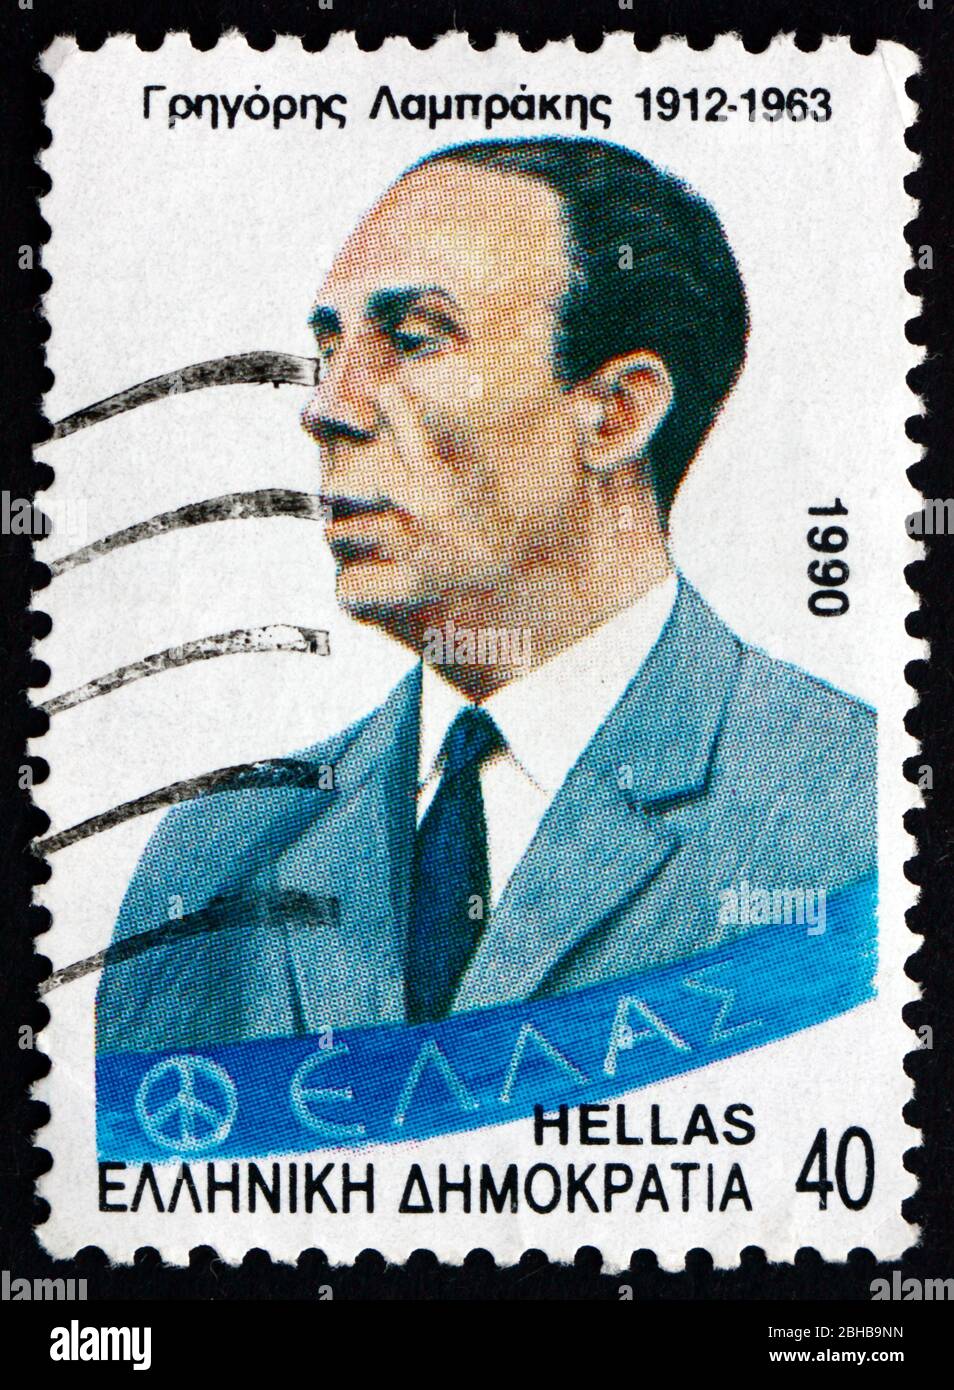 GRECIA - ALREDEDOR de 1990: Un sello impreso en Grecia muestra a Gregoris Lambraki, reformador político, político, médico, alrededor de 1990 Foto de stock